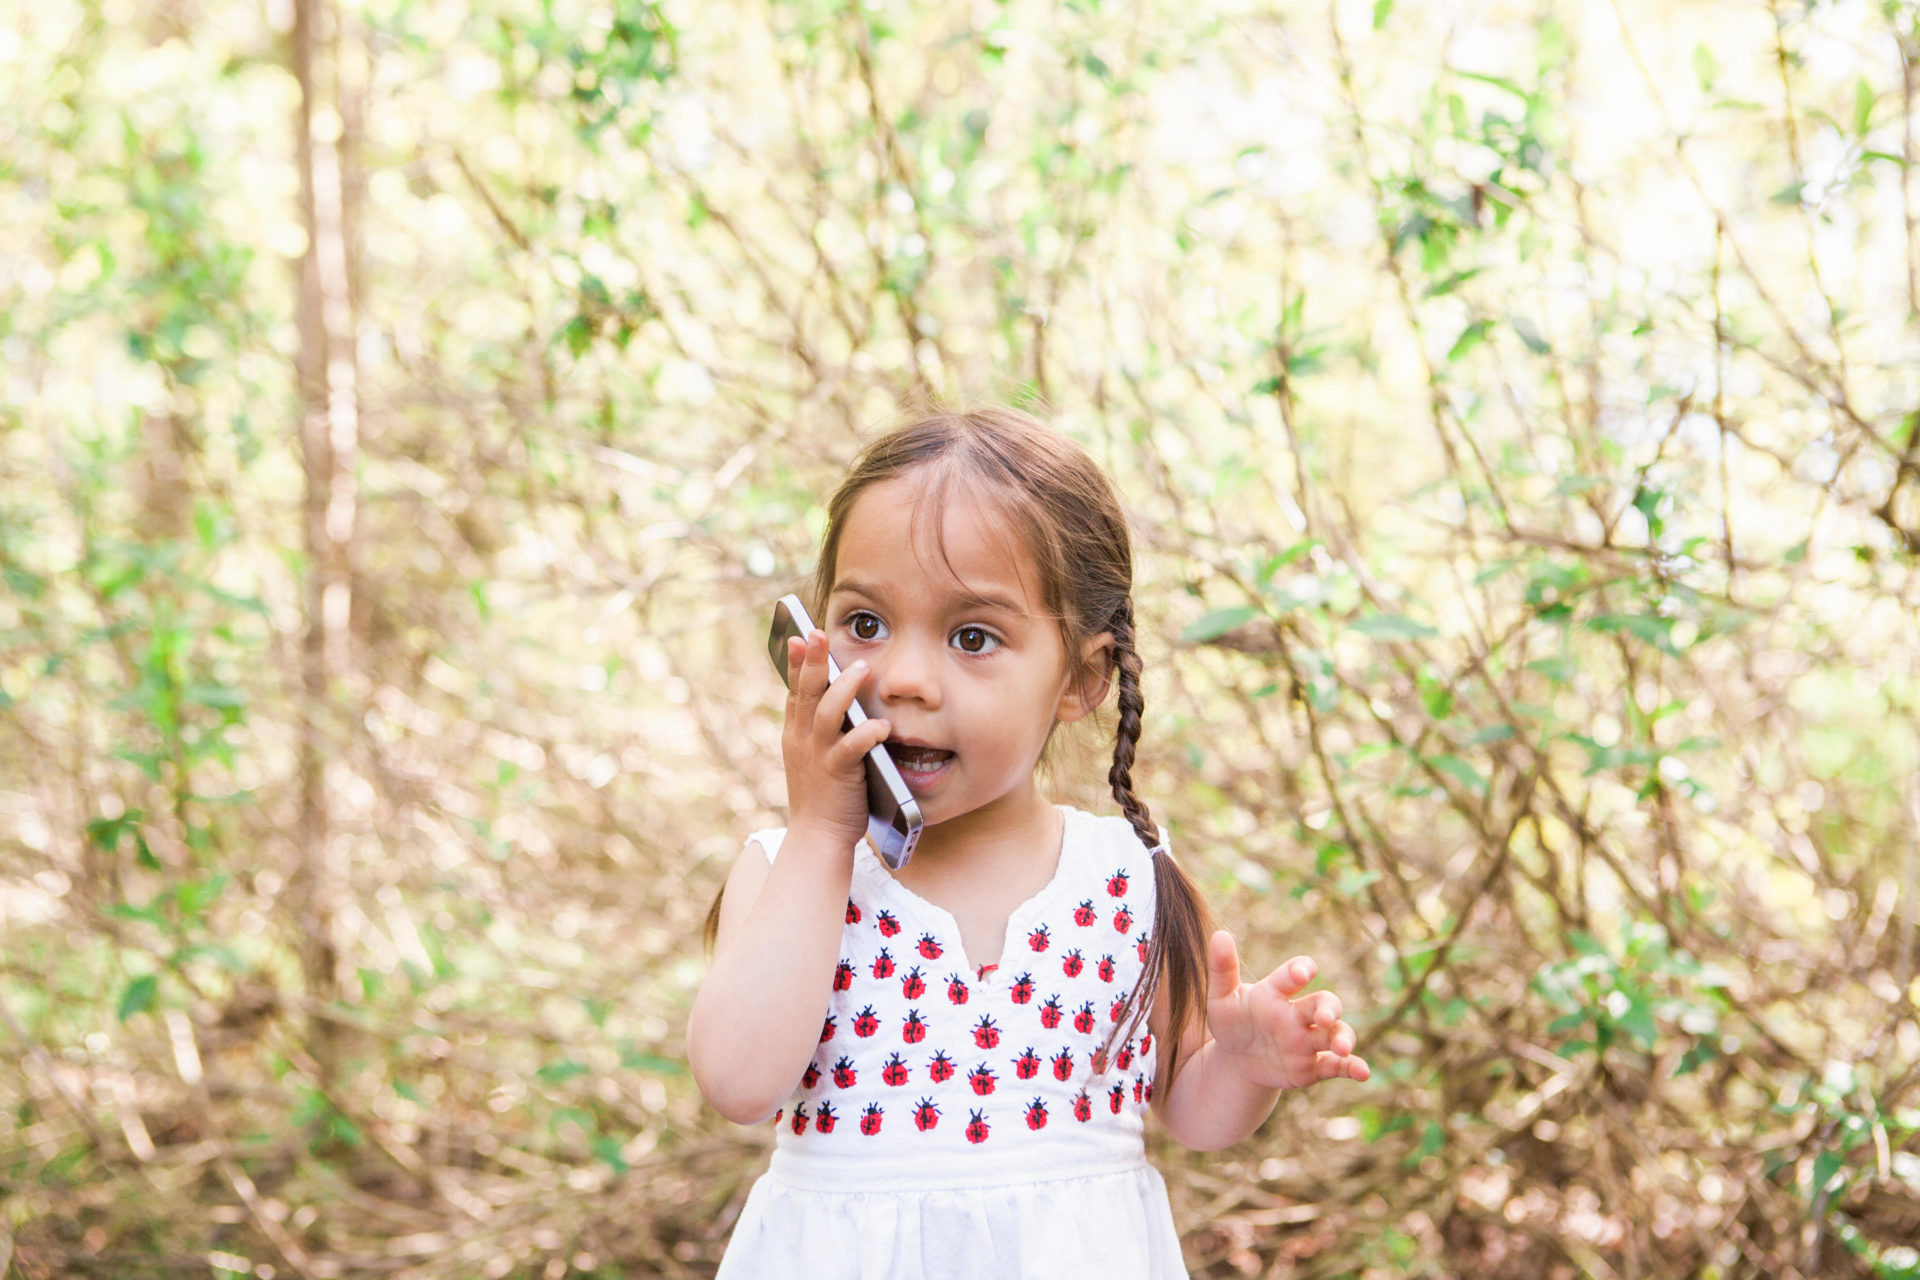 Toddler on phone talking. Image: caia image / Alamy Stock Photo